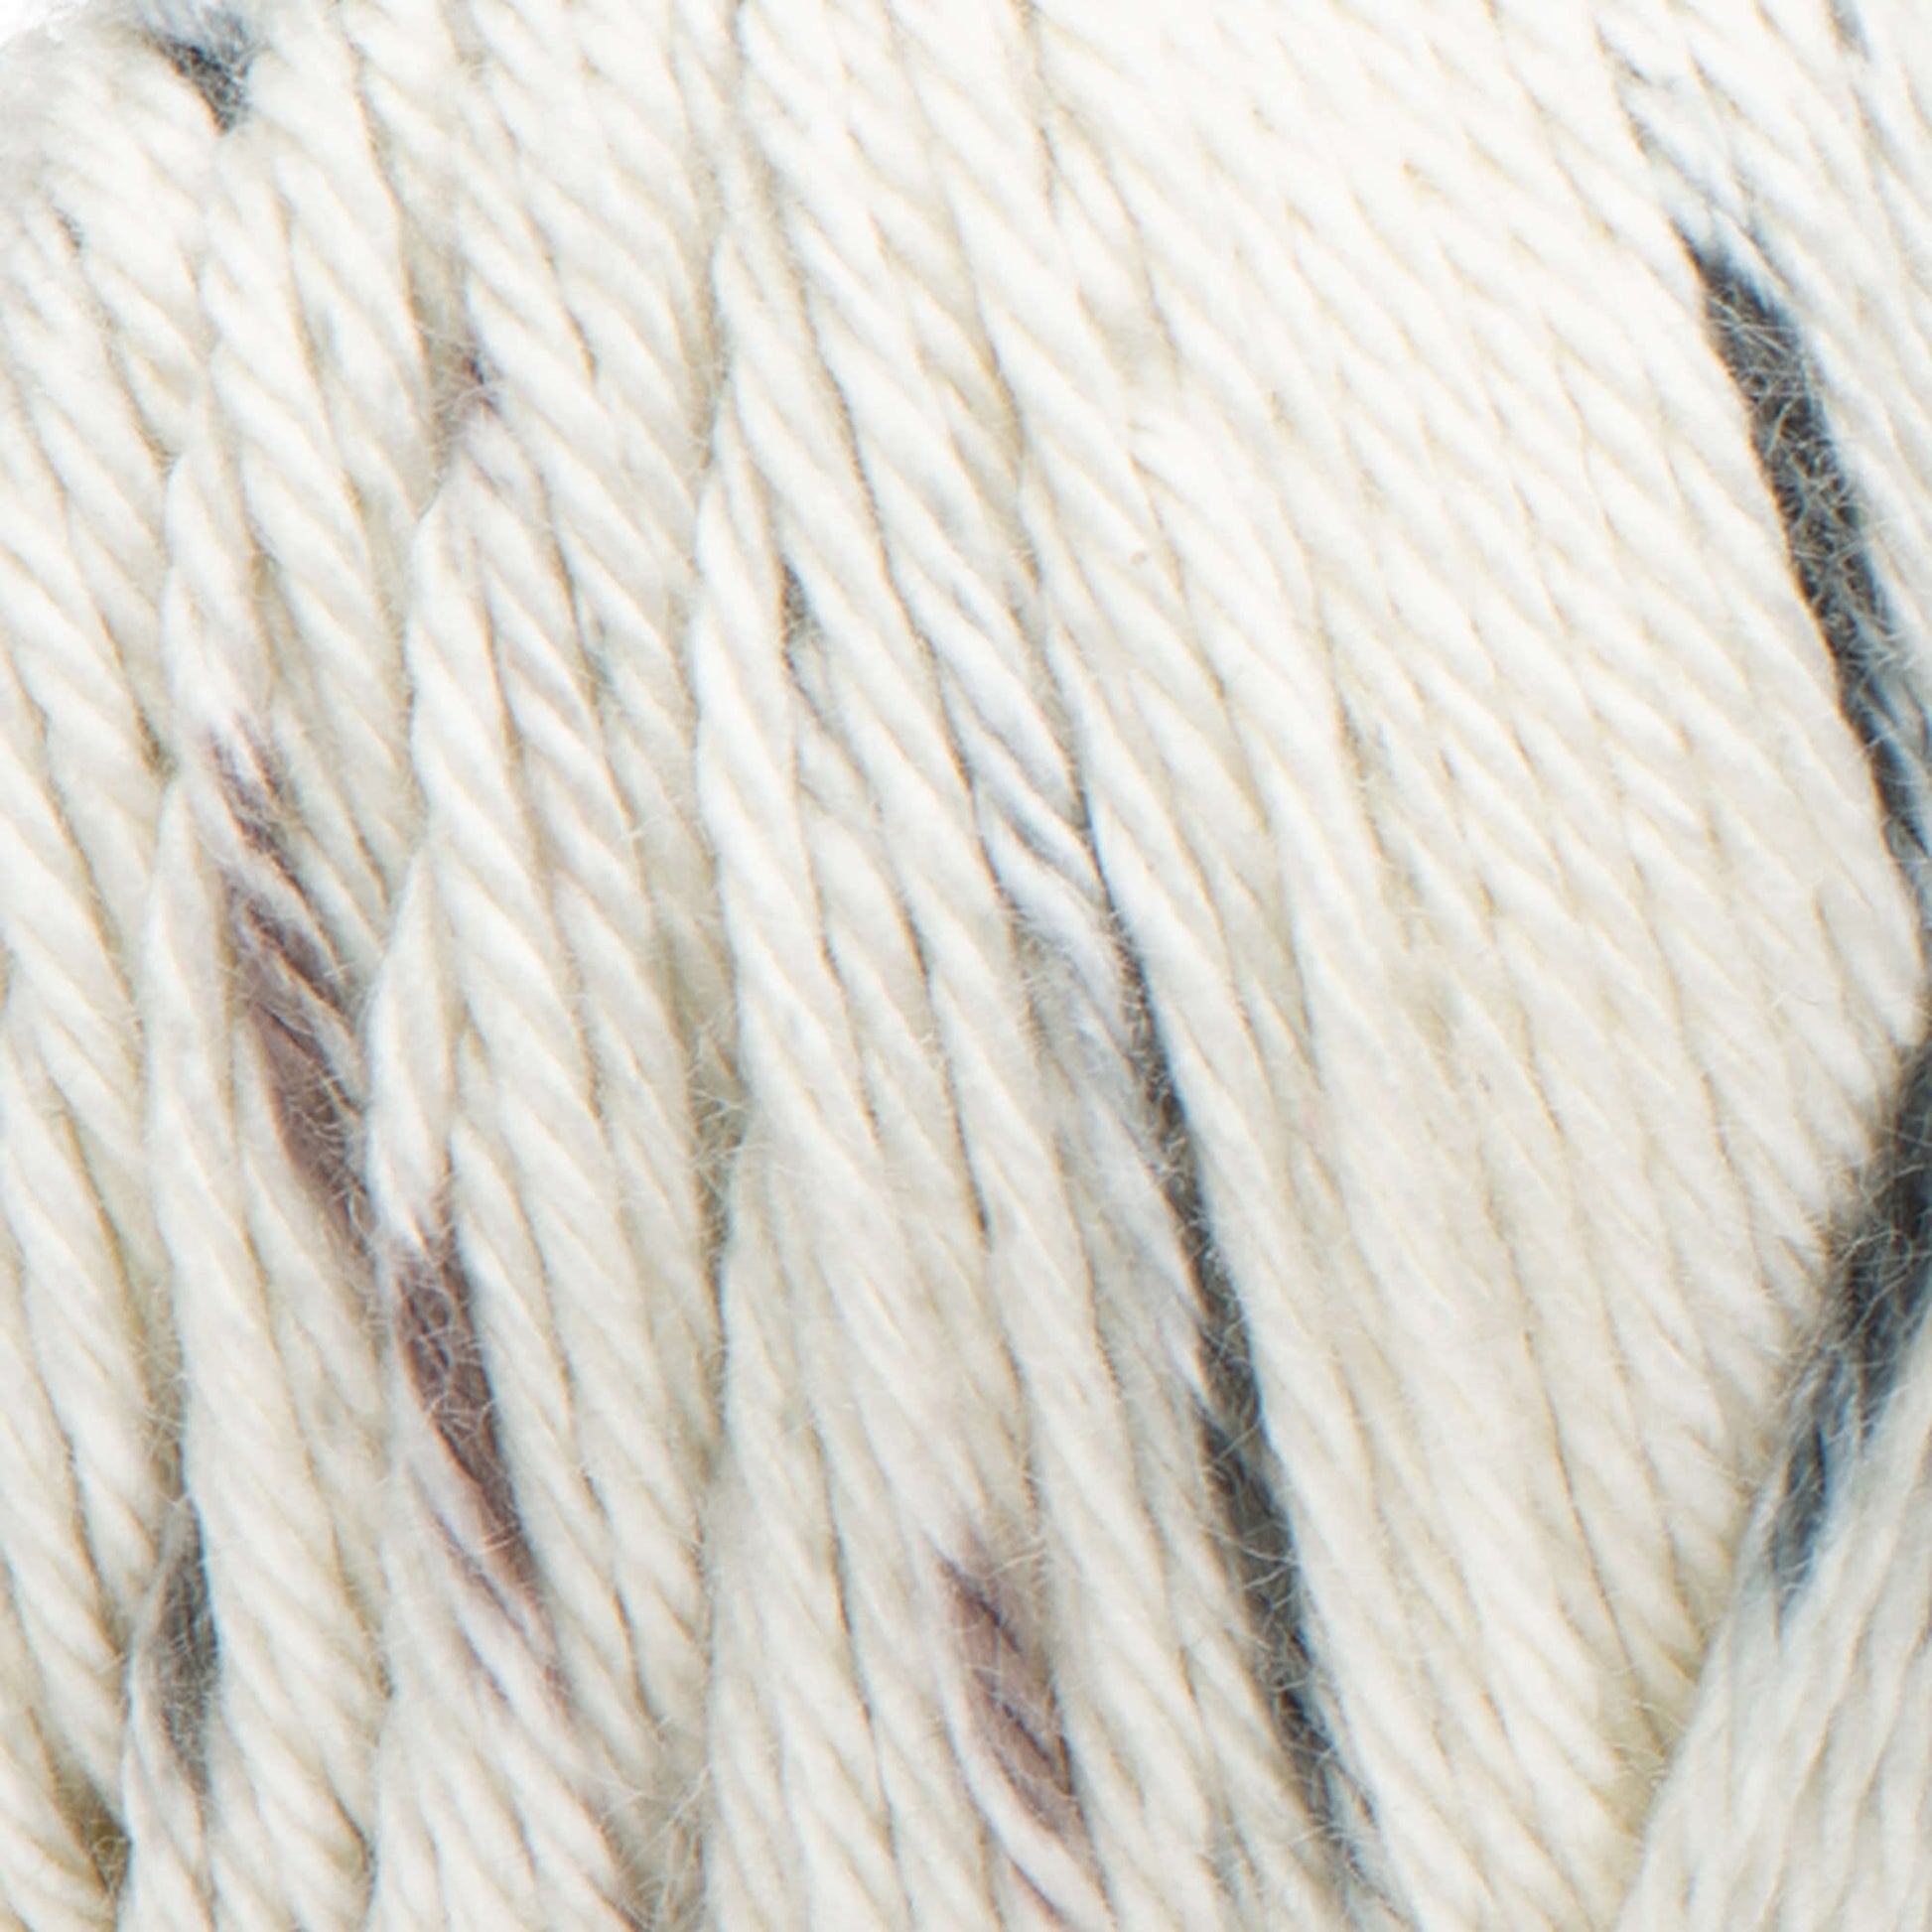 Caron Simply Soft Speckle #4 Medium Acrylic Yarn, Galaxy 5oz/141g, 235 Yards (3 Pack), Size: Three-Pack